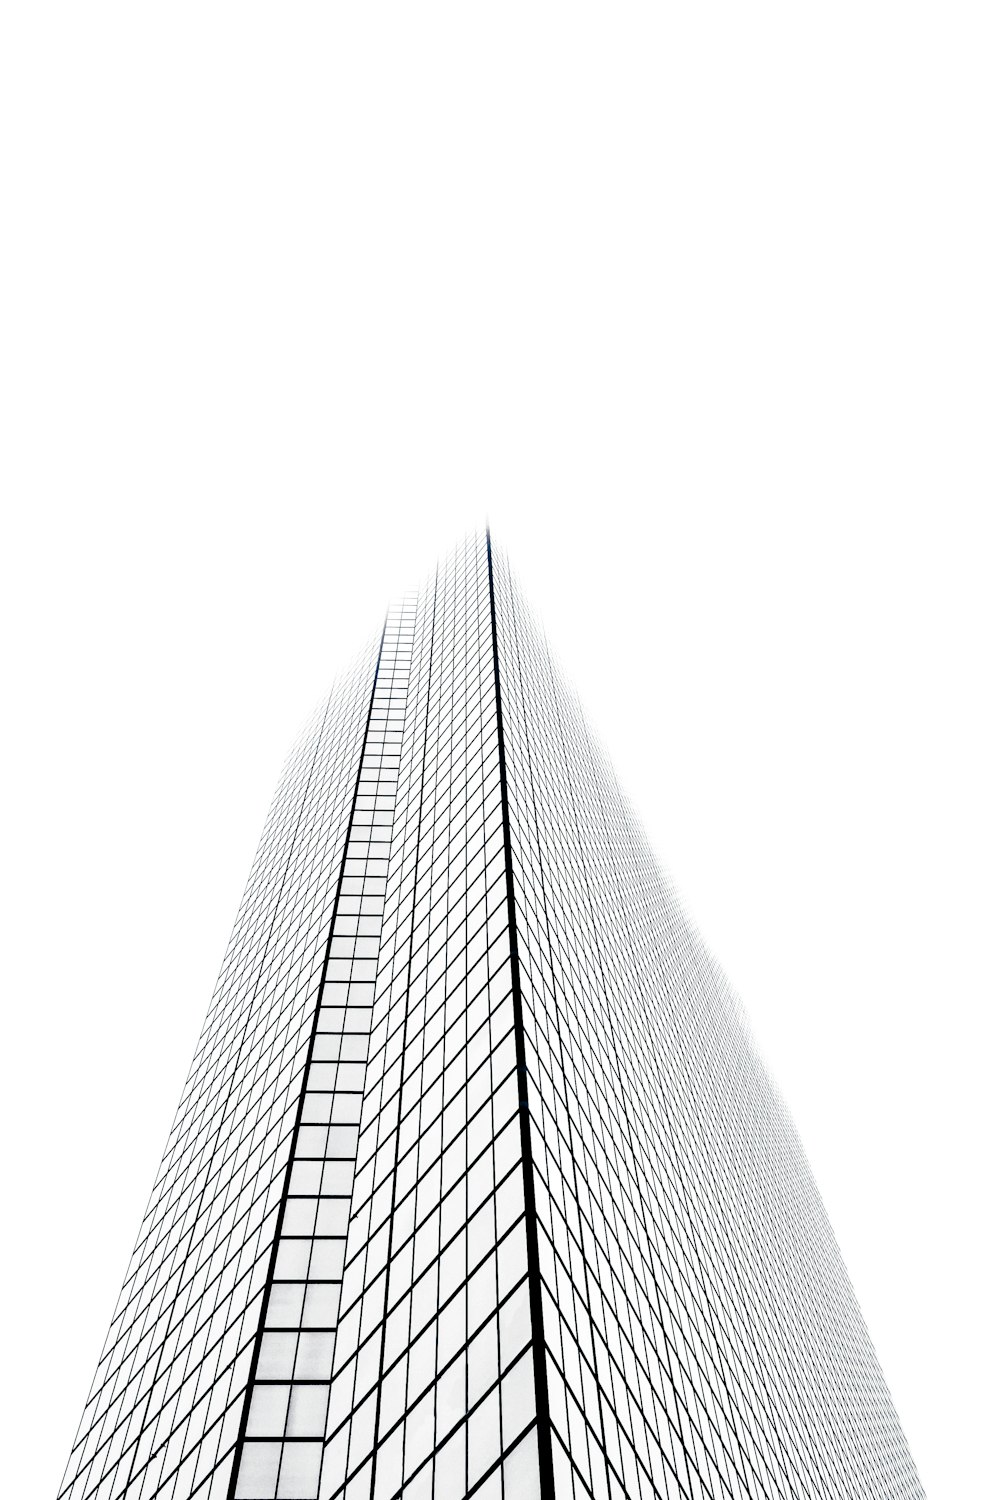 Una foto en blanco y negro de un edificio alto